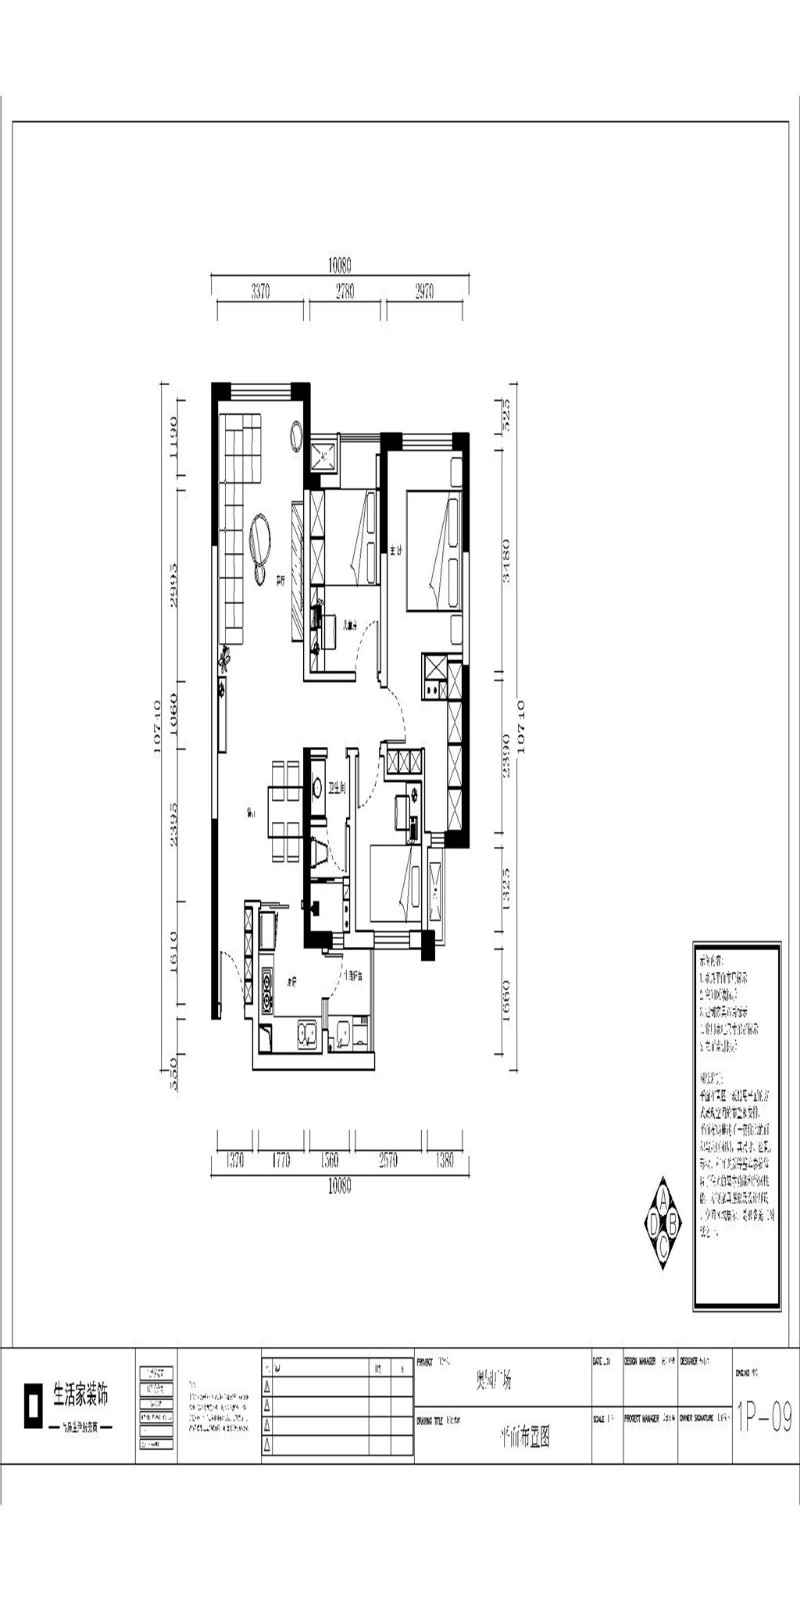 98欧式三房装修效果图,奥园广场 | 森林密语装修案例效果图-美广网